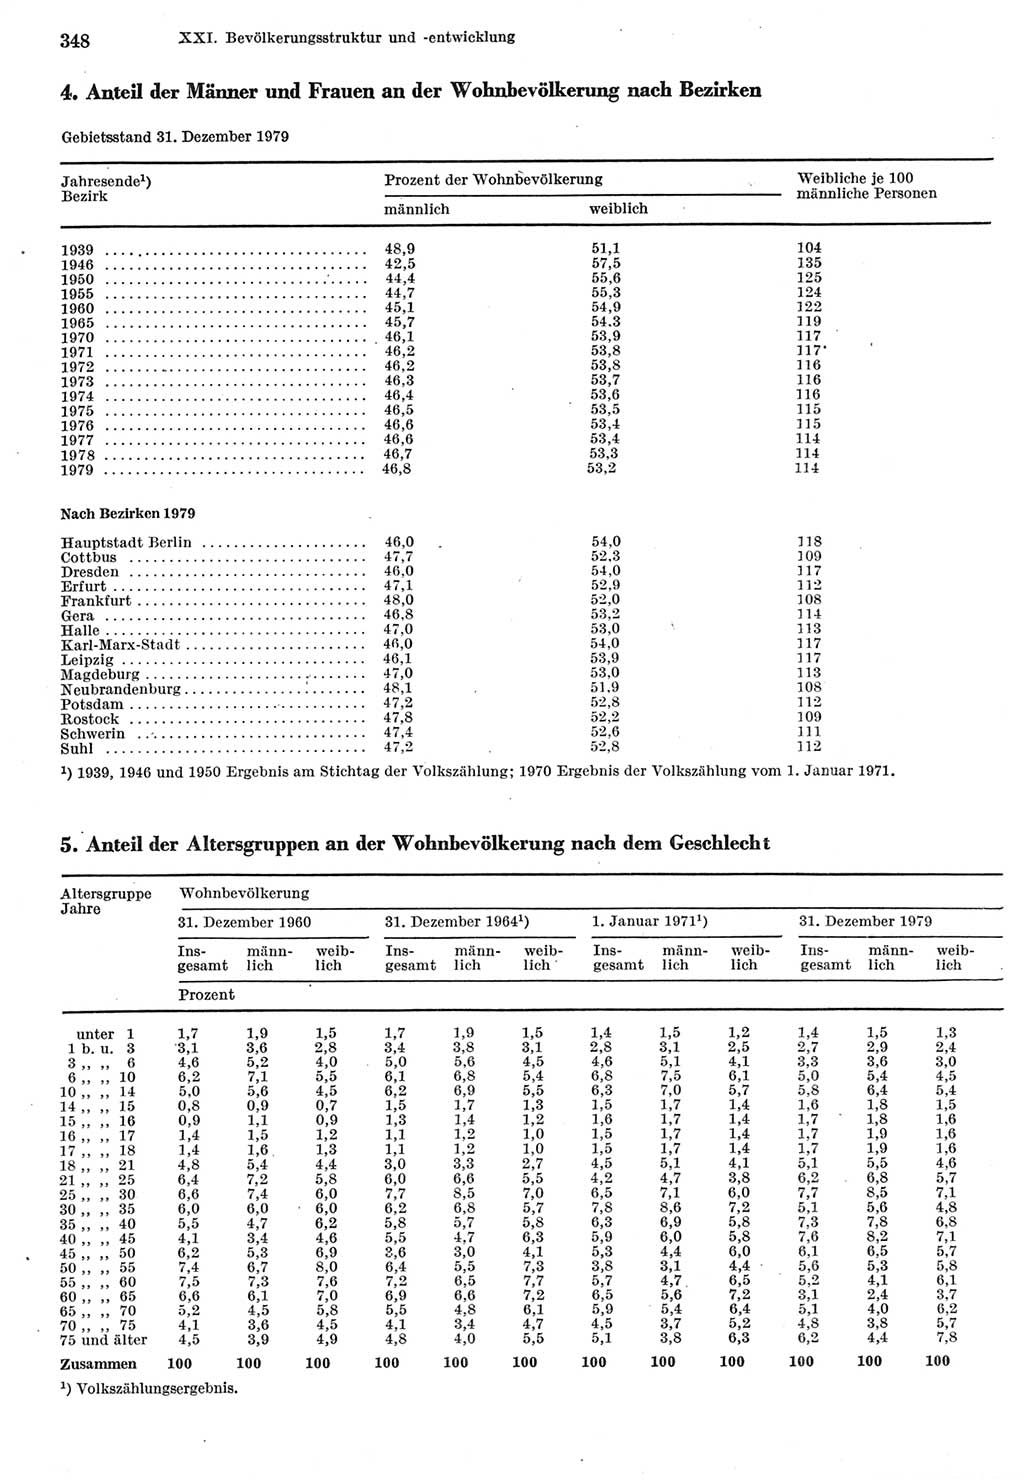 Statistisches Jahrbuch der Deutschen Demokratischen Republik (DDR) 1980, Seite 348 (Stat. Jb. DDR 1980, S. 348)